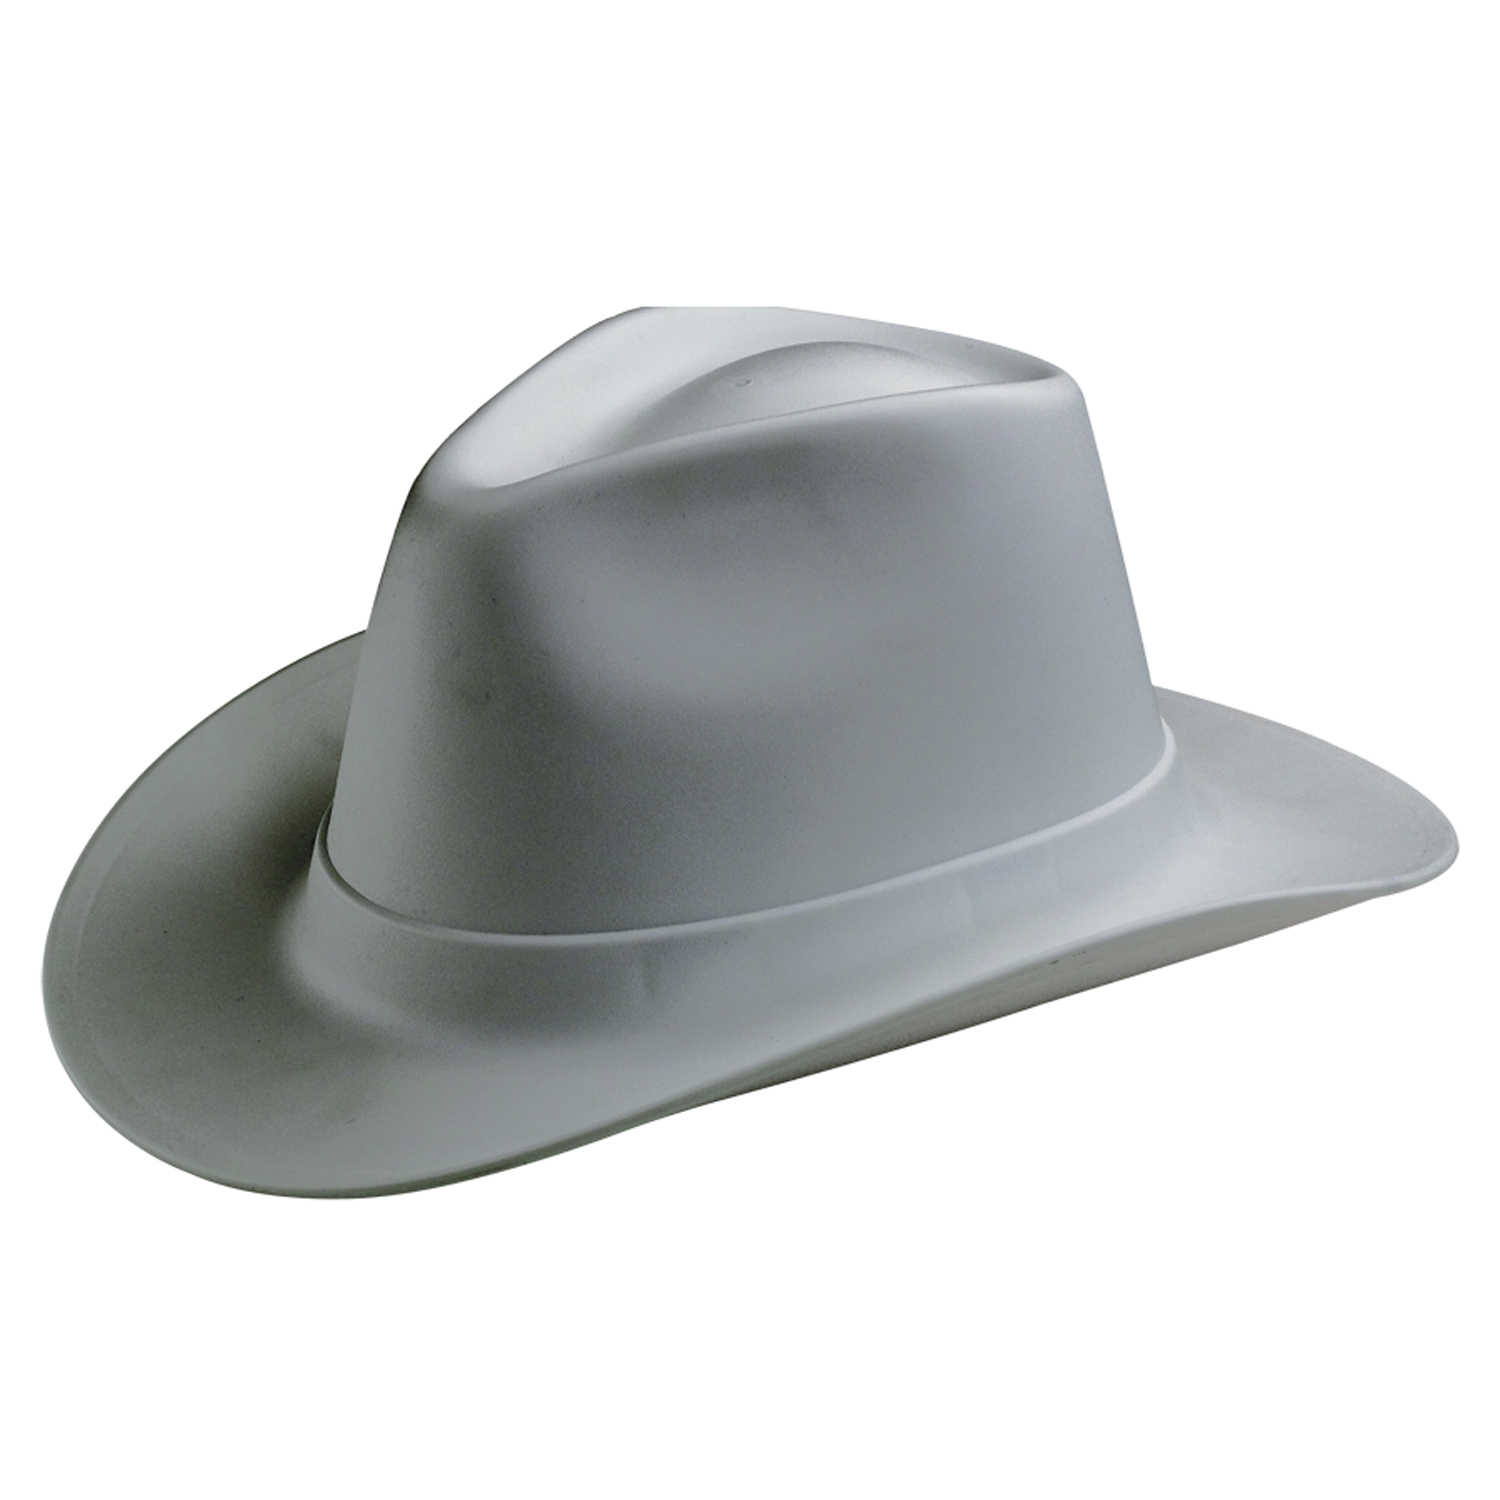 Шляпа пластиковая. Vulcan vcb200-00 Western hard hat, Type 1, class e, Ratchet (6-point), белый. Vulcan Cowboy Style hard hat White. Vulcan каска строительная. Каска шляпа.